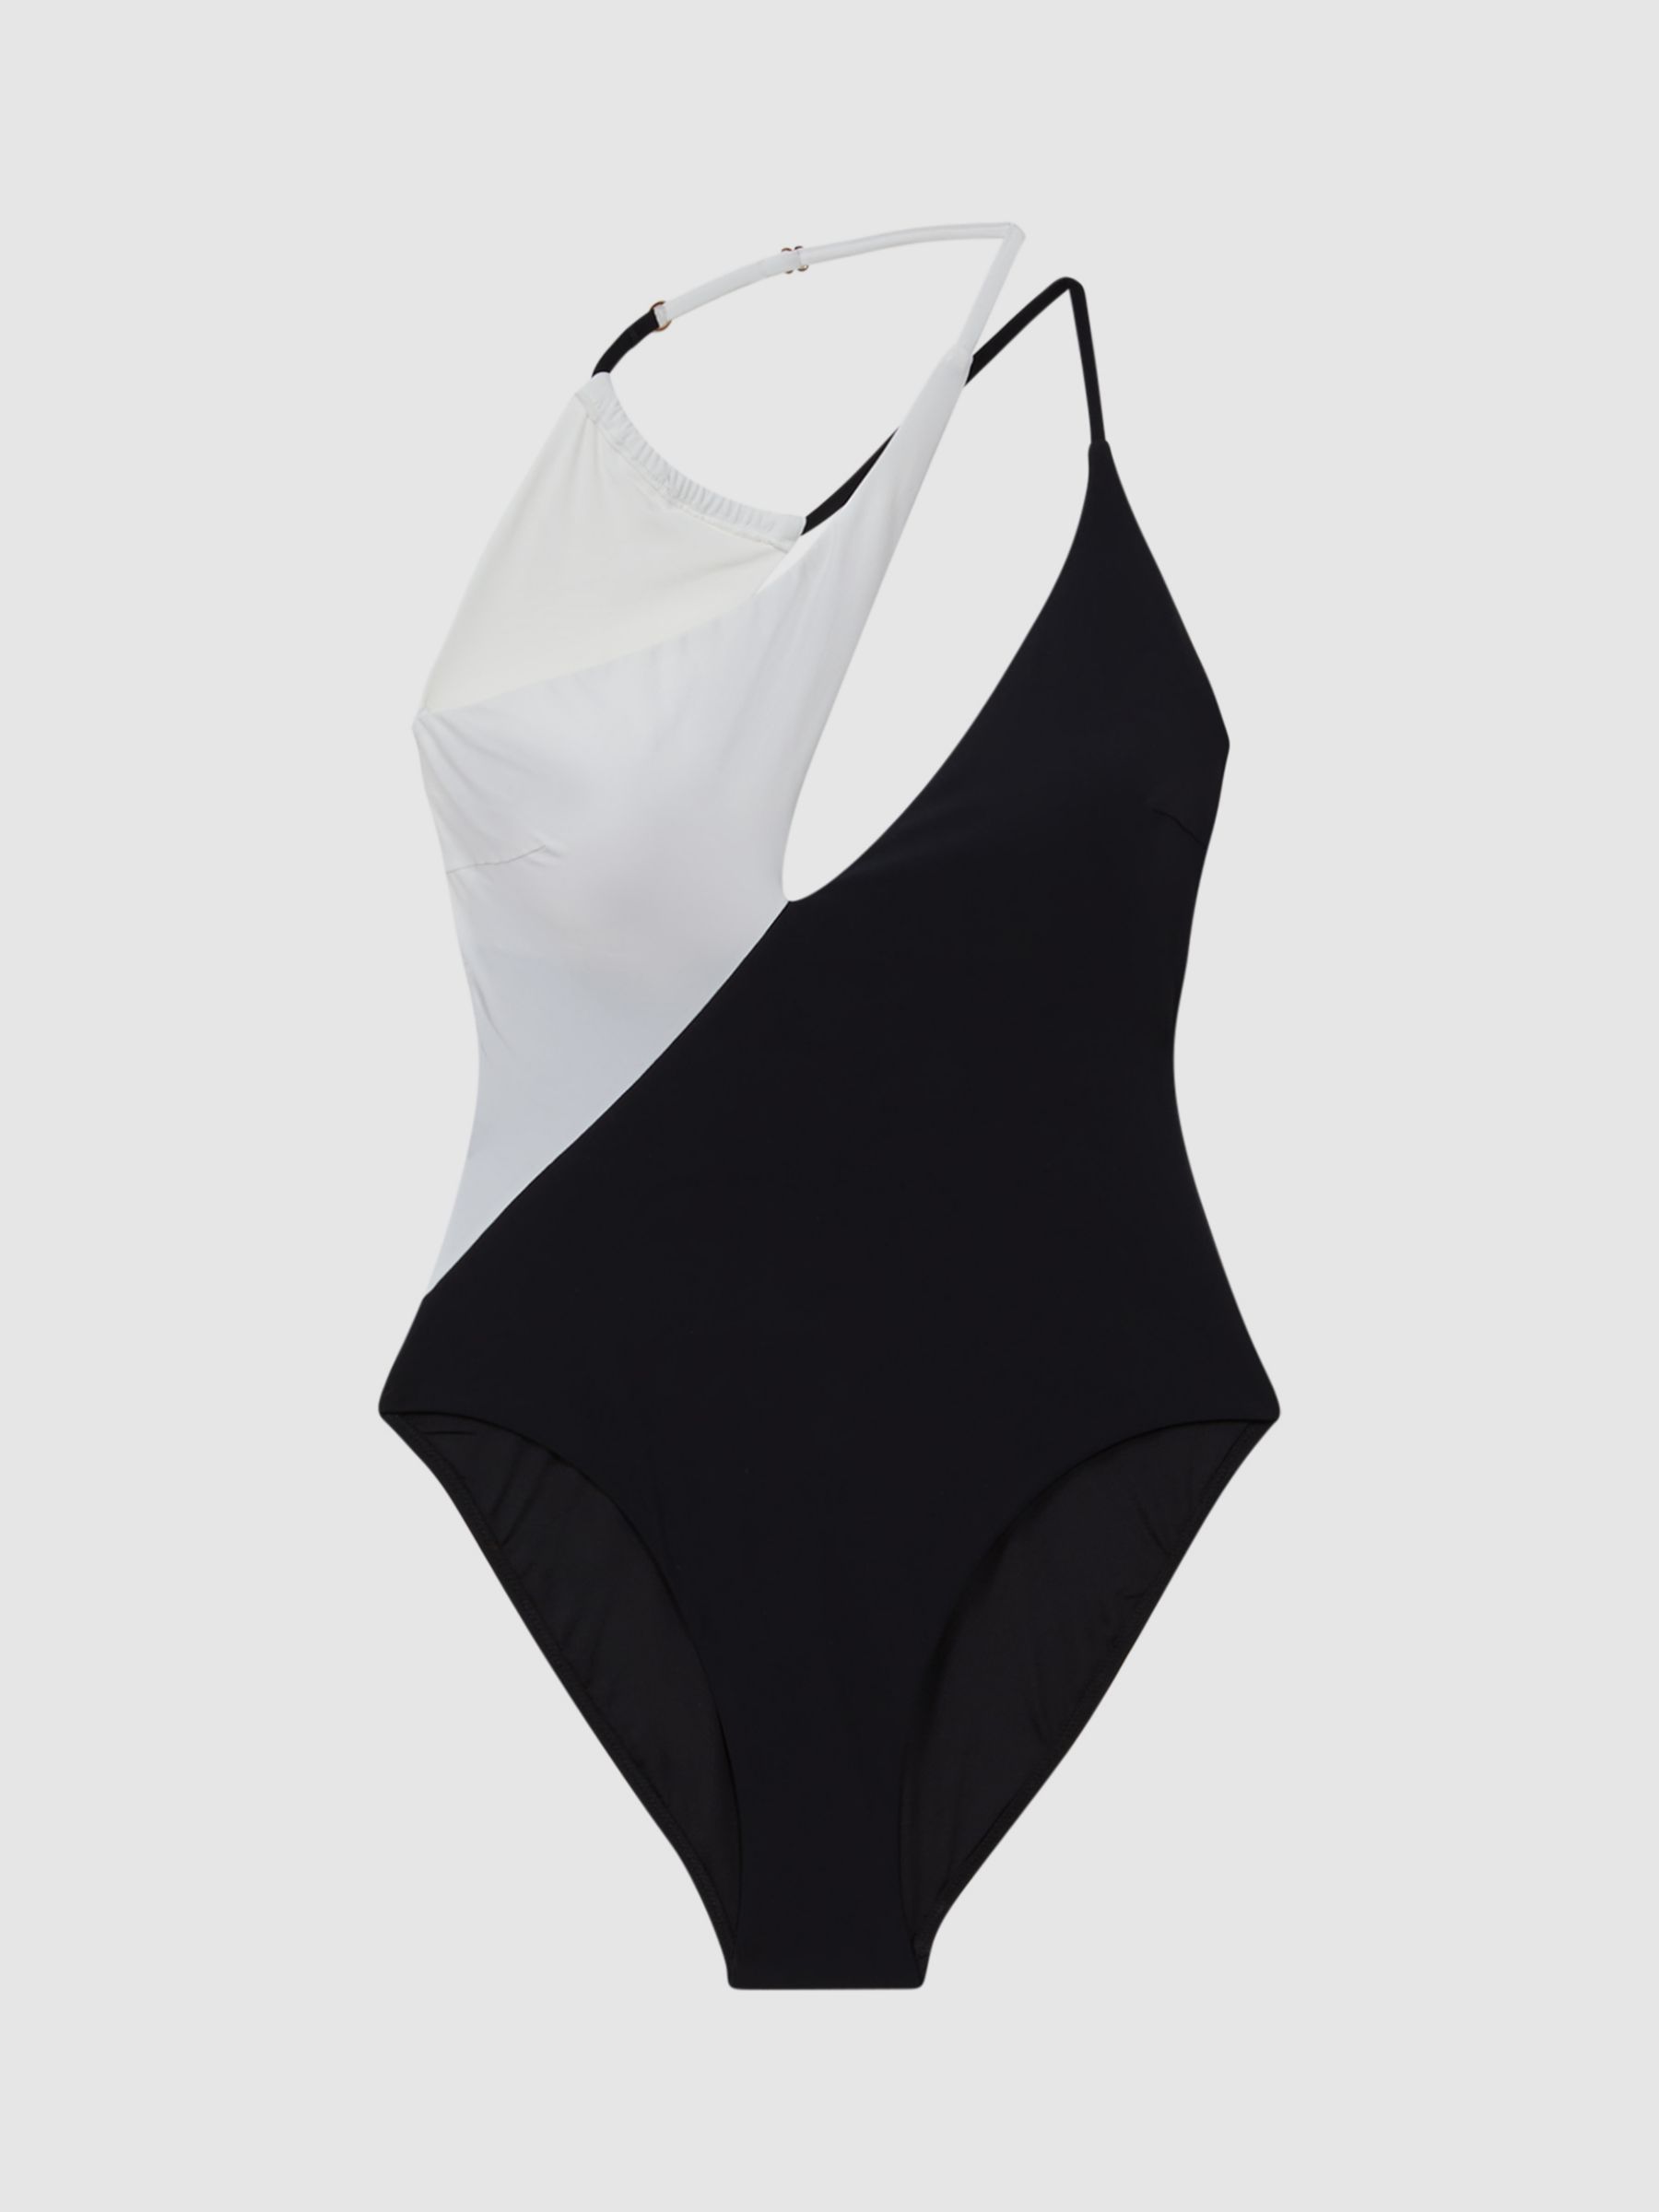 Reiss Leighton Colour Block Asymmetric Swimsuit, Black/White, 6